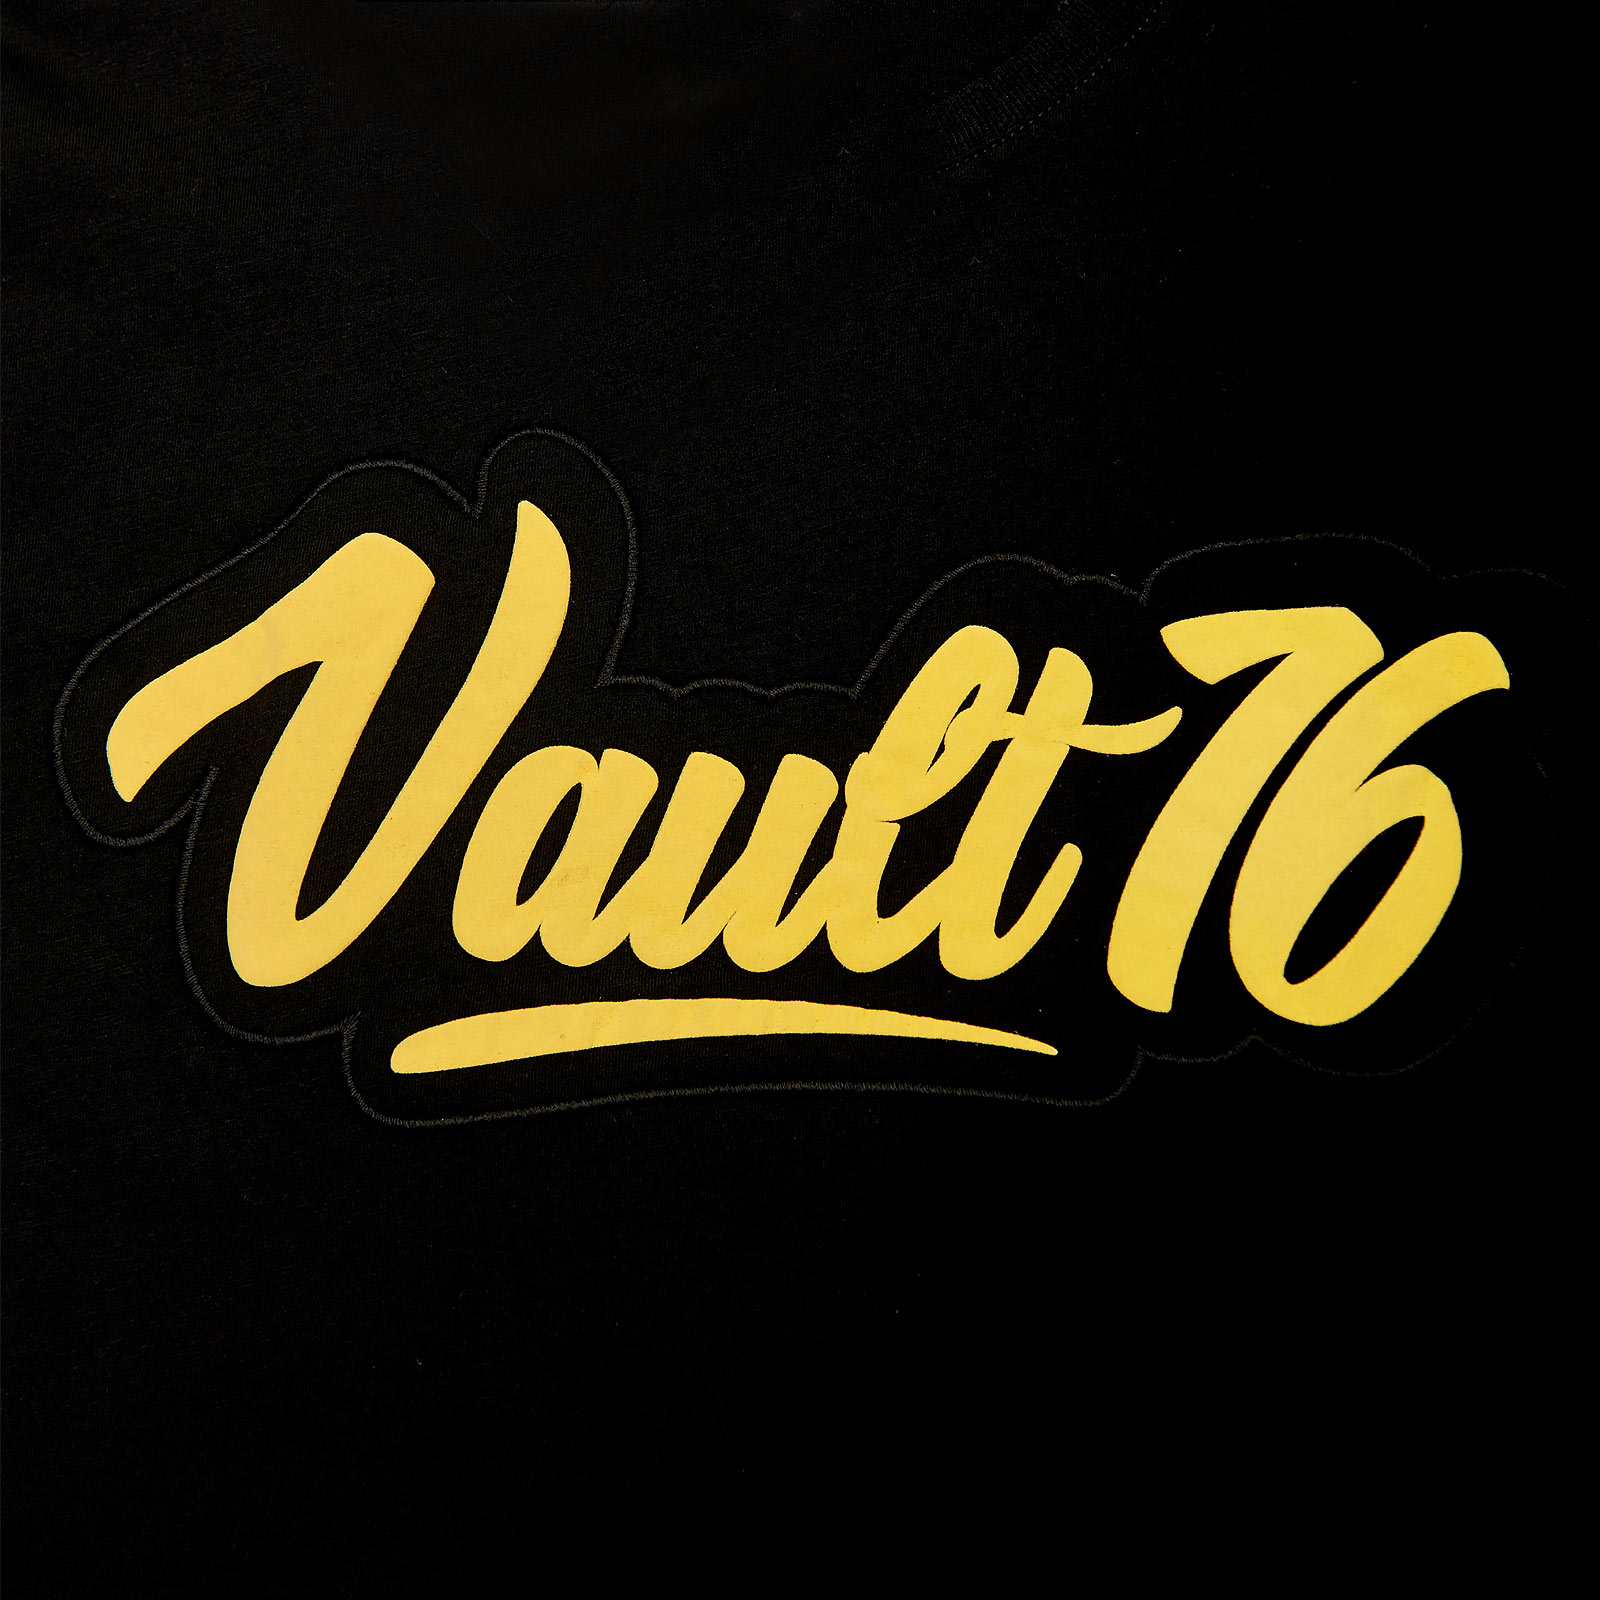 Fallout - T-shirt Oil Vault 76 noir